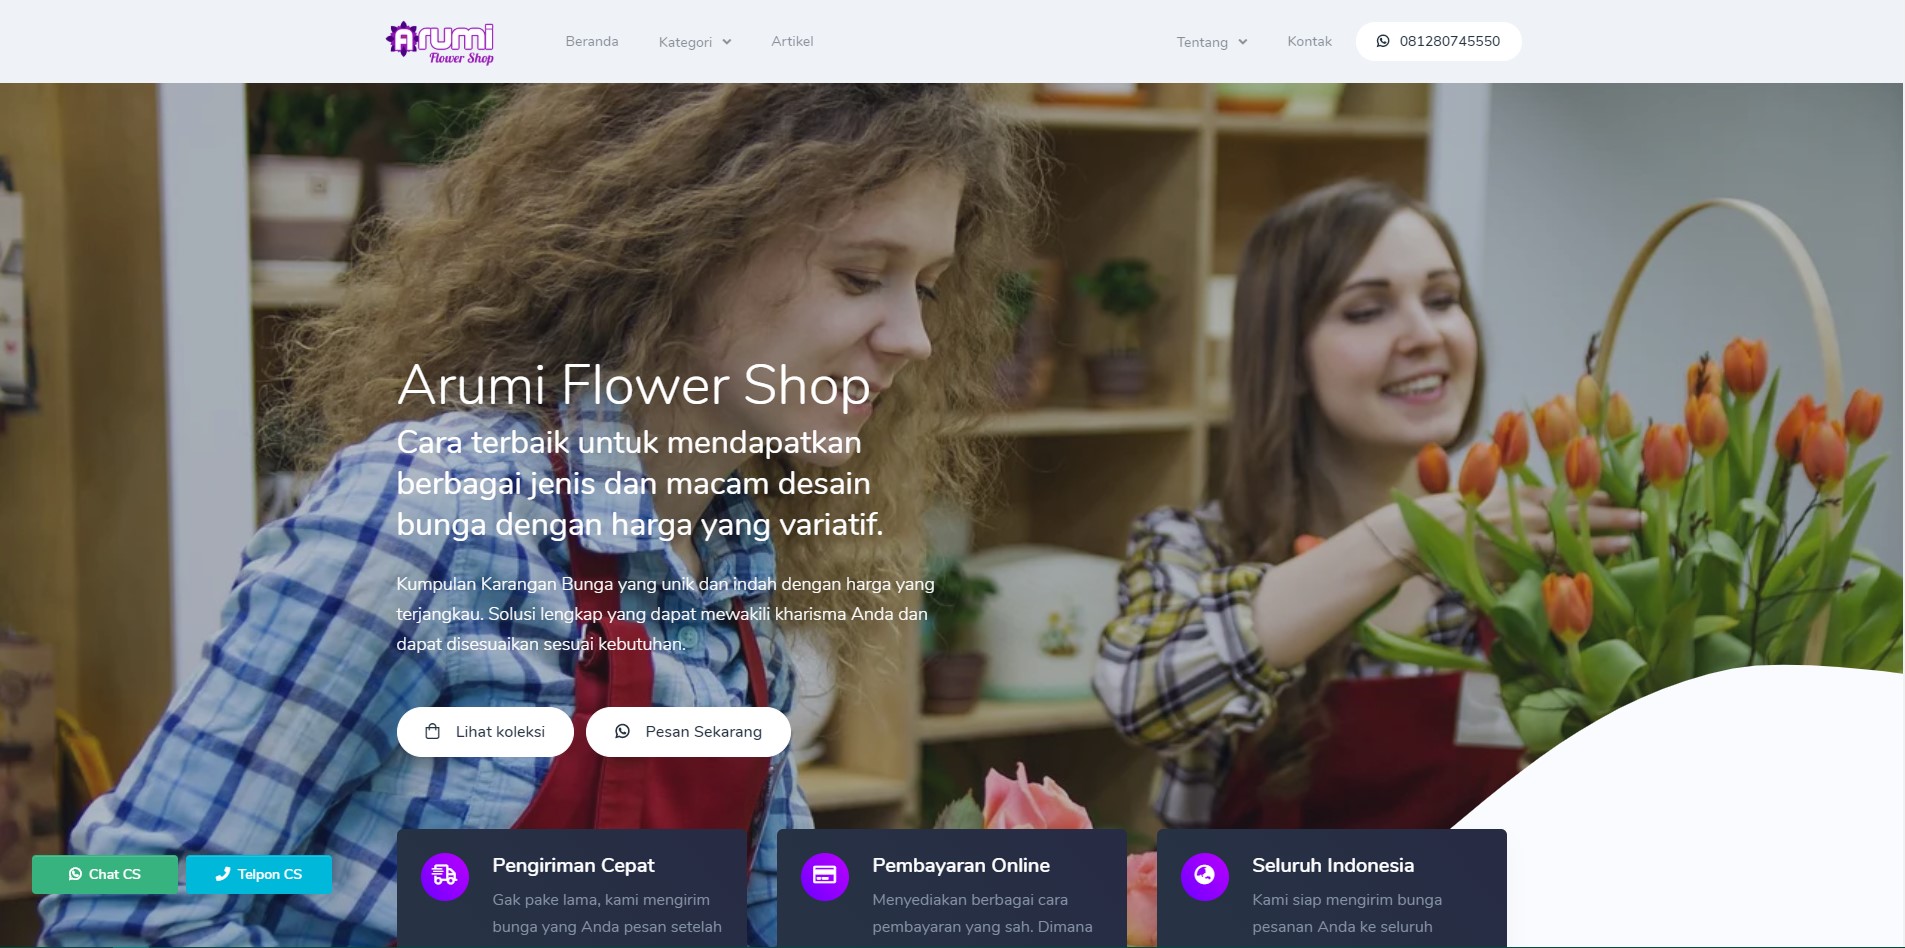 Arumi Flower Shop